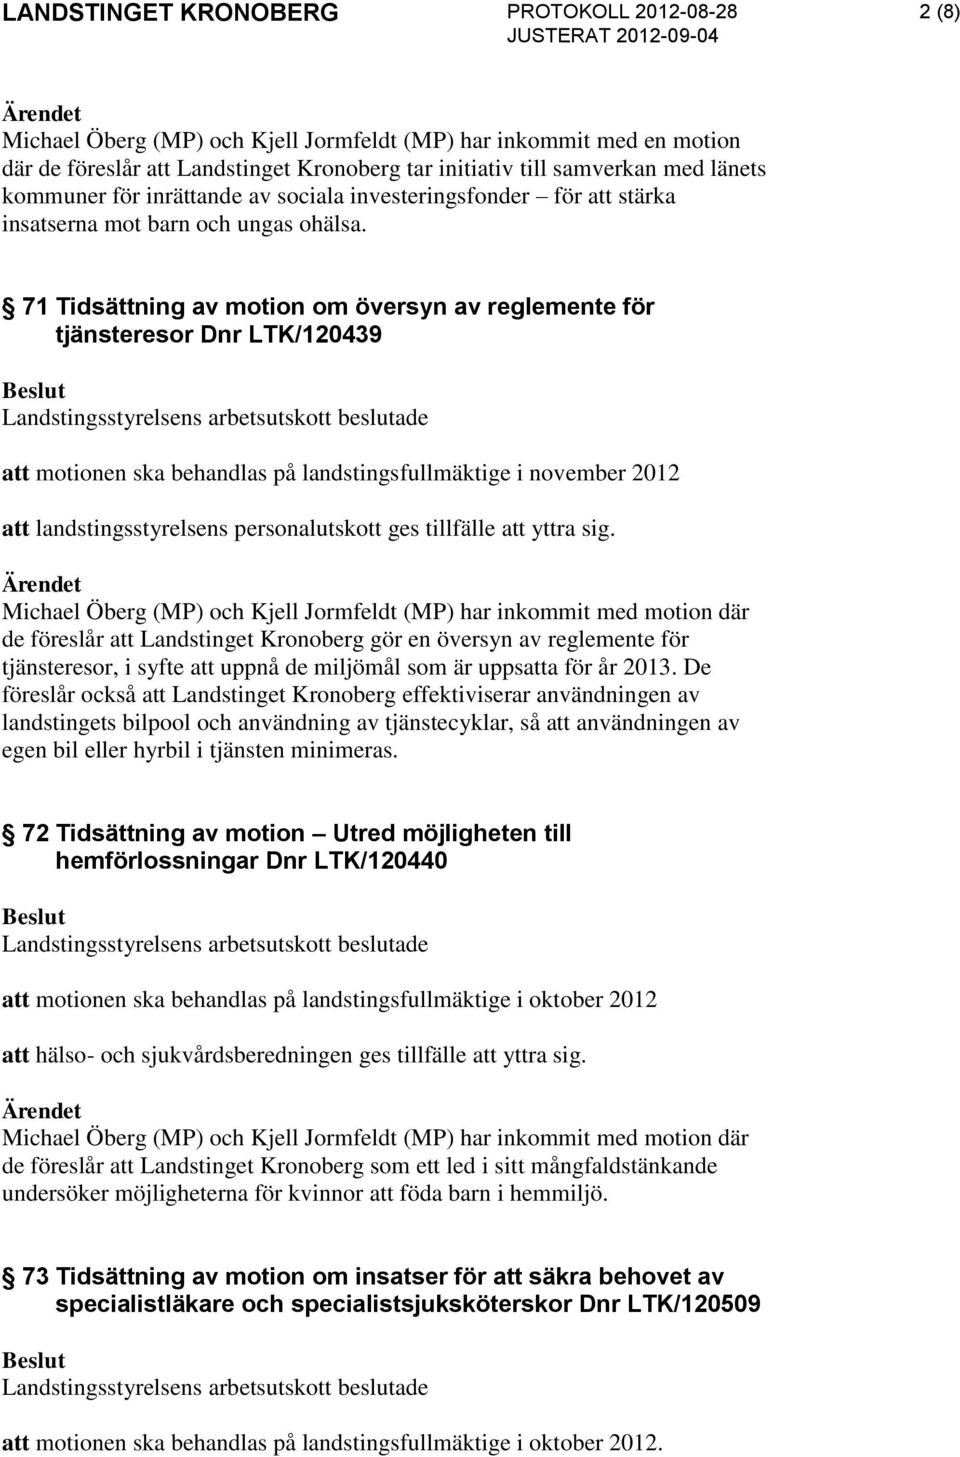 71 Tidsättning av motion om översyn av reglemente för tjänsteresor Dnr LTK/120439 att motionen ska behandlas på landstingsfullmäktige i november 2012 att landstingsstyrelsens personalutskott ges